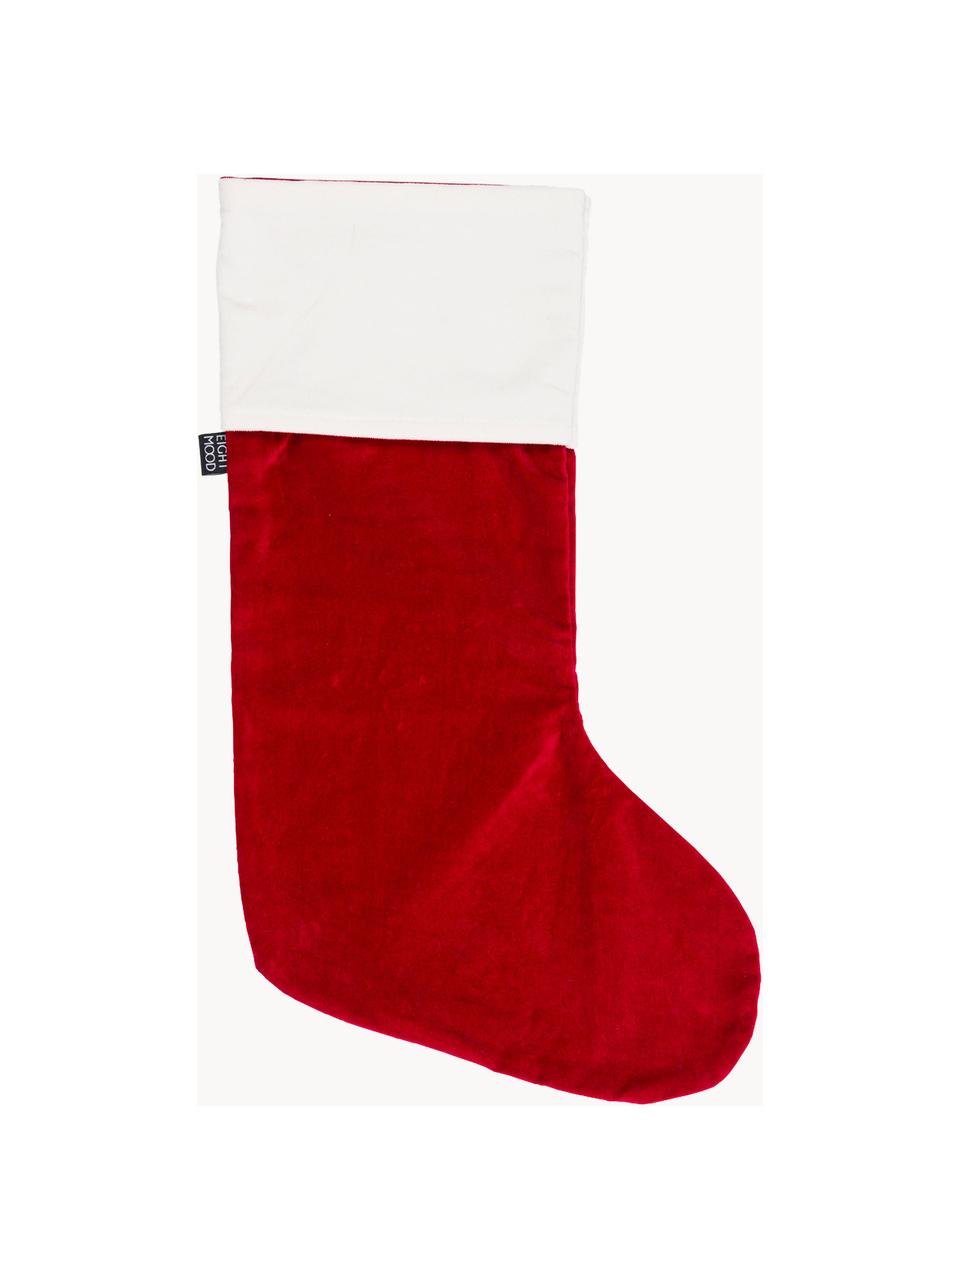 Chaussette de Noël Veronica, haut. 45 cm, Coton, Rouge, blanc, larg. 25 x haut. 45 cm